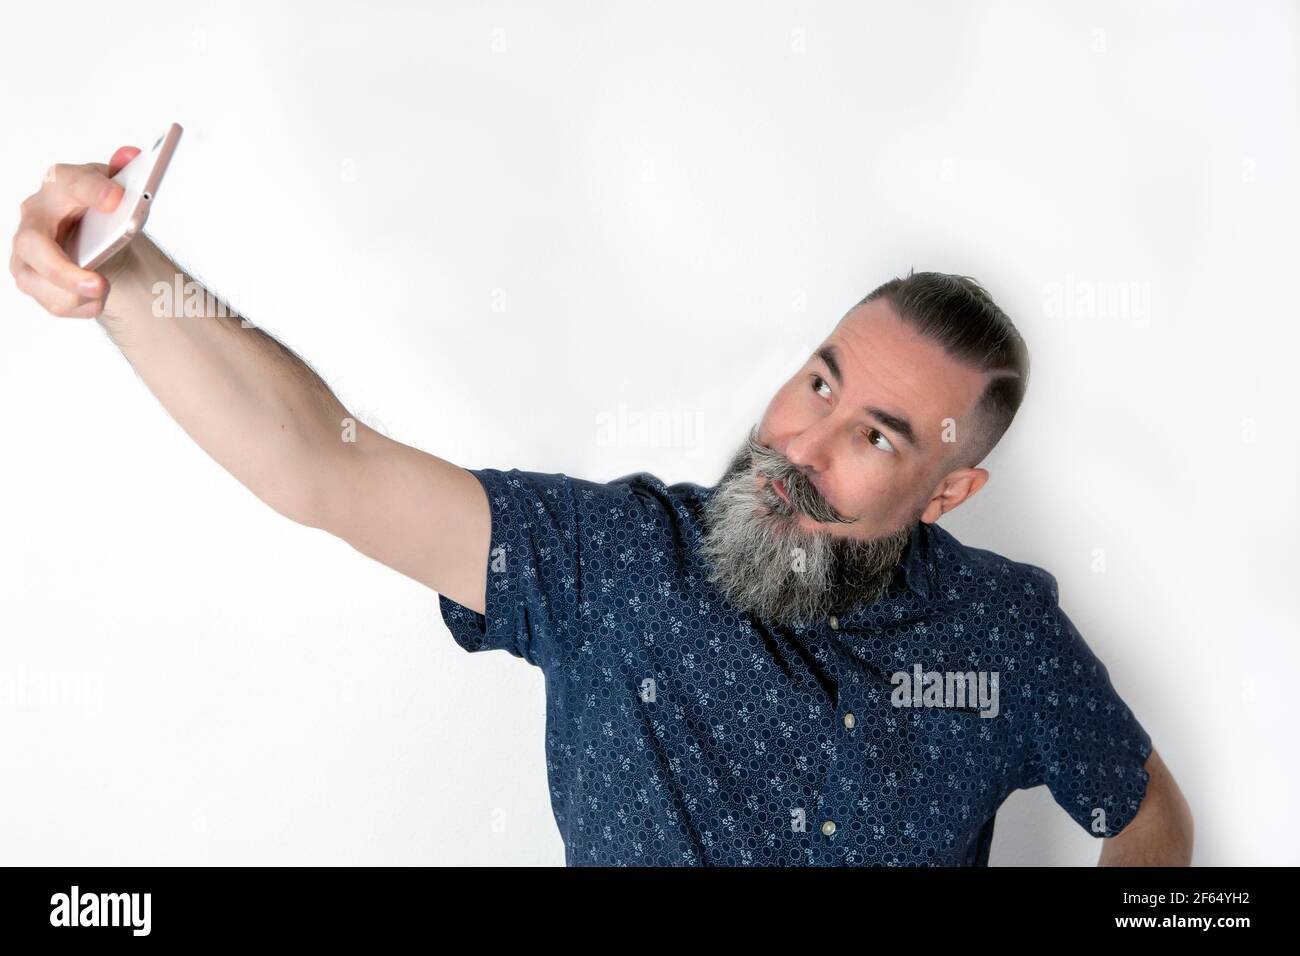 40-45-jähriger Mann mit einem großen, mittelgrauen Bart, der sein Smartphone benutzt, um ein Selbstporträt zu machen (Selfie) Stockfoto